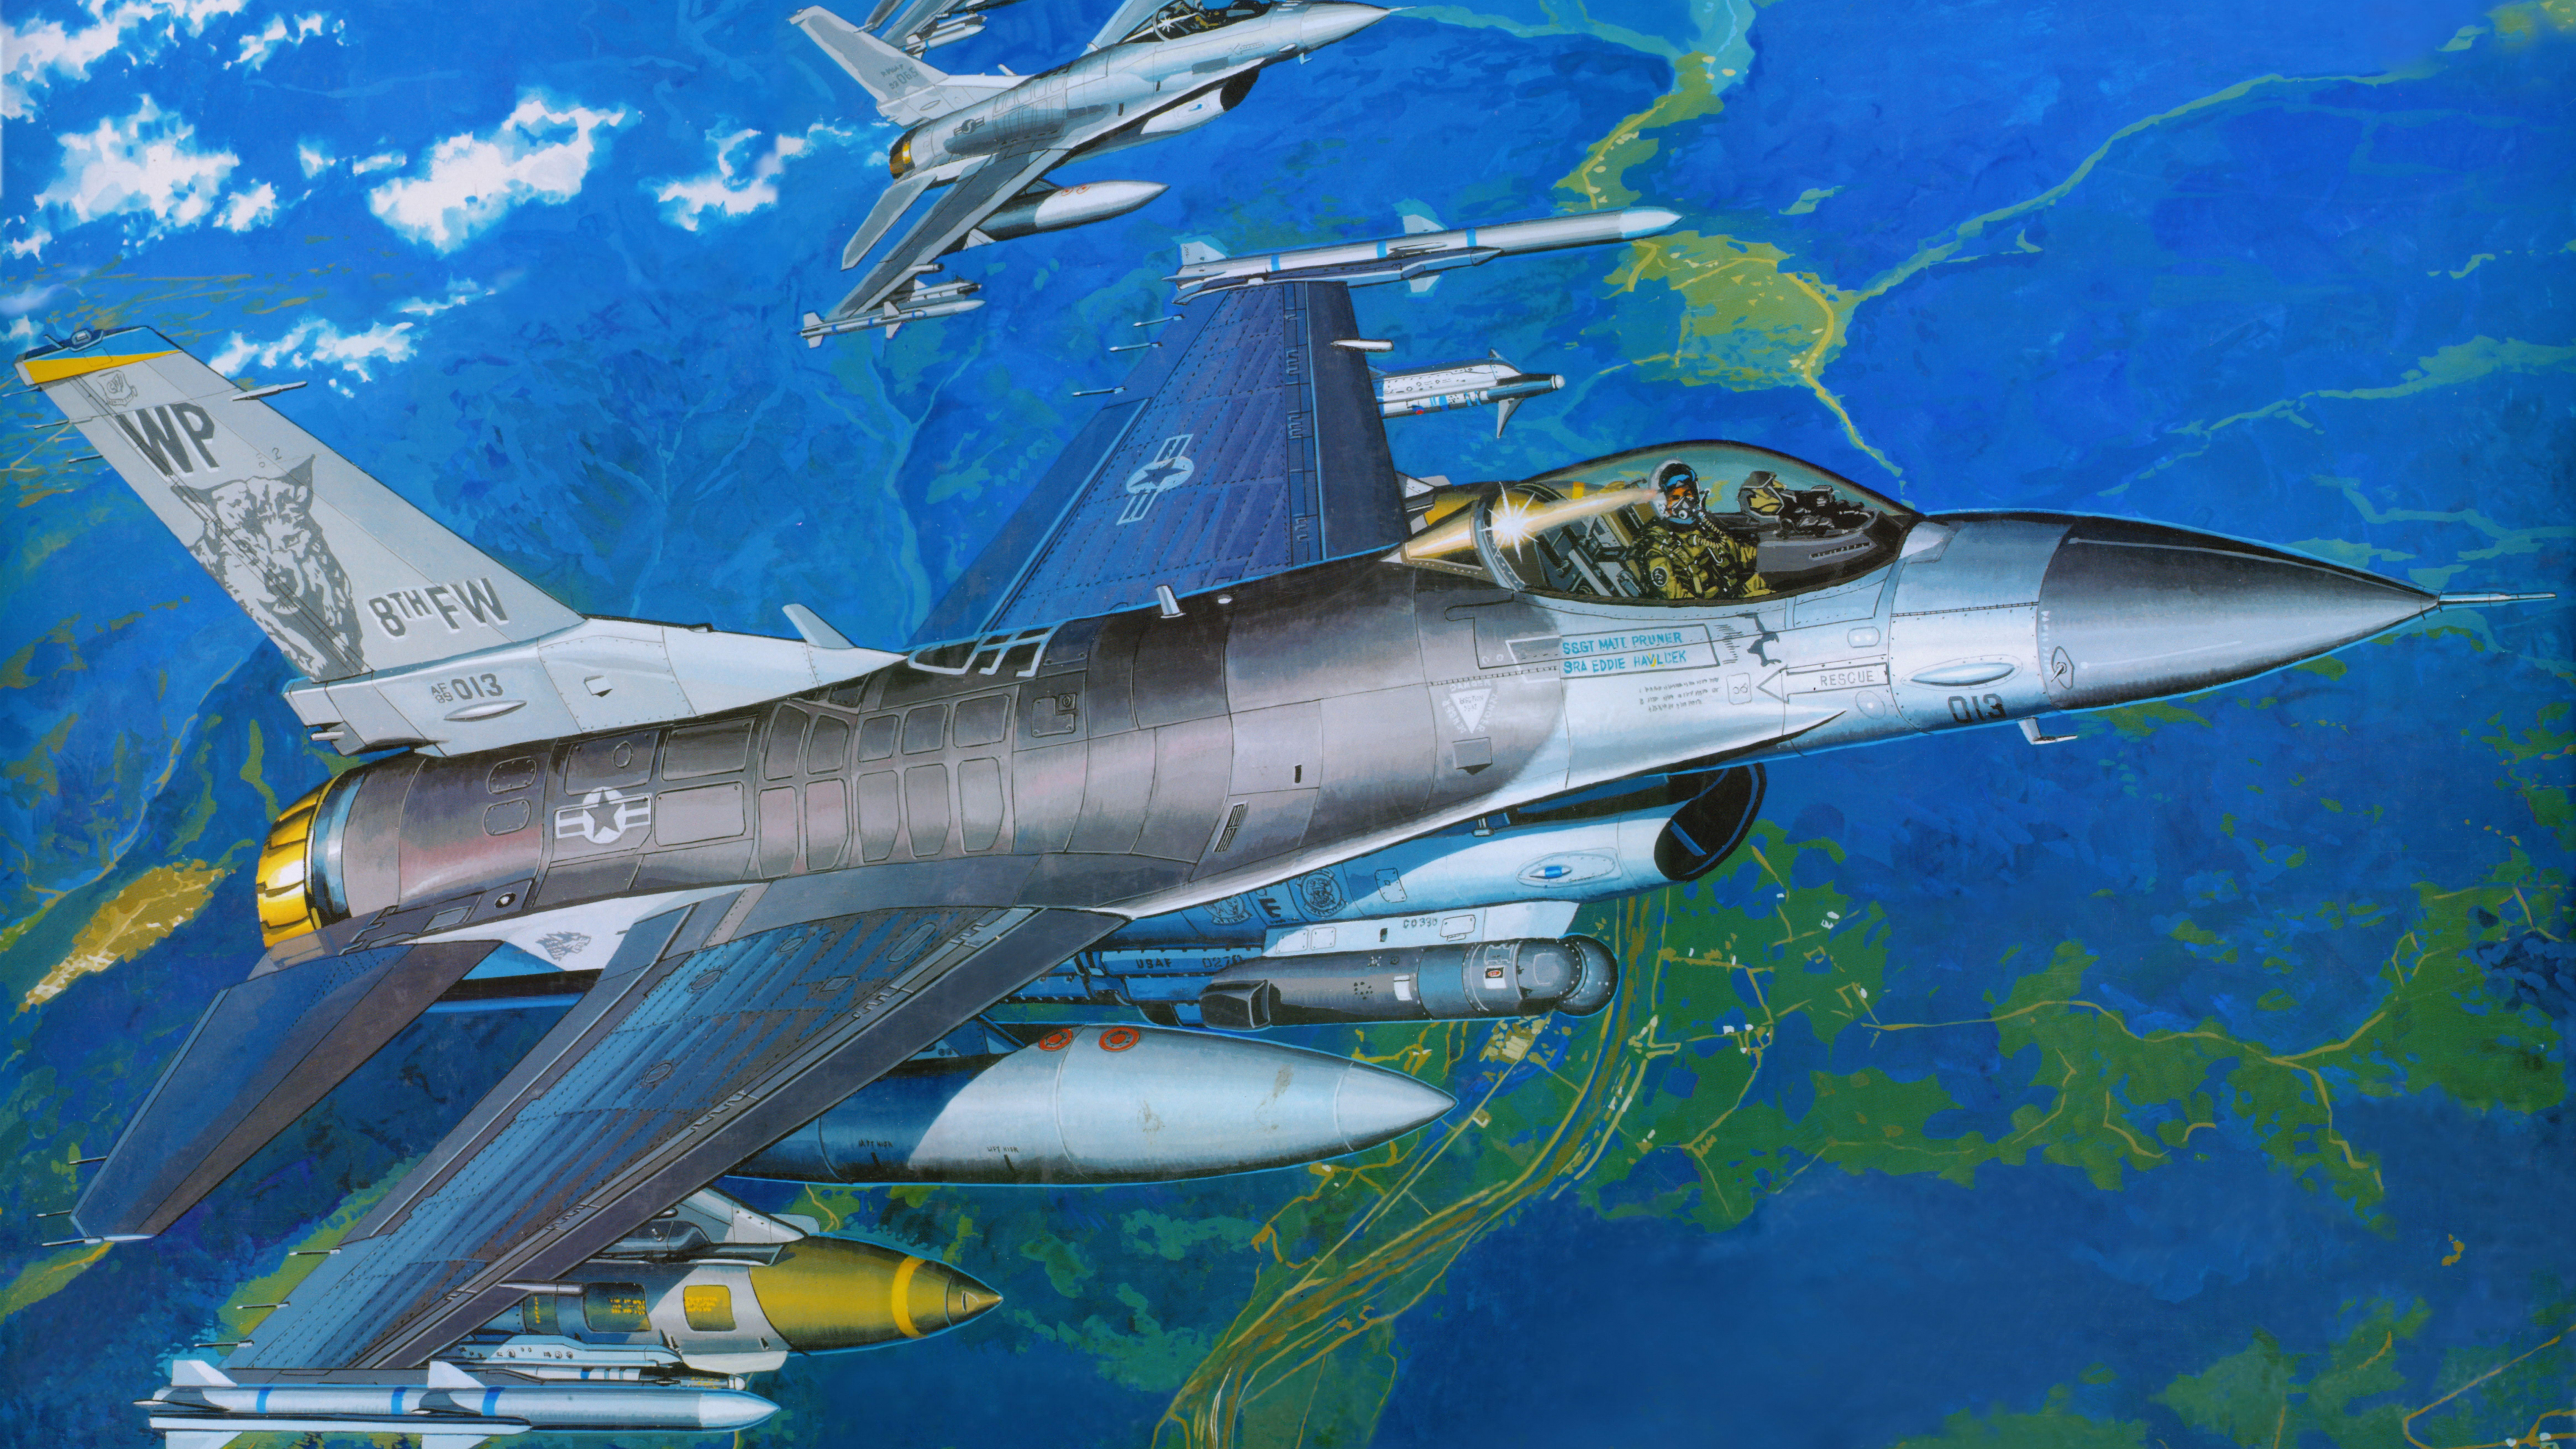 塑料模型, 航空, 空军, 军用飞机, 喷气式飞机 壁纸 7680x4320 允许